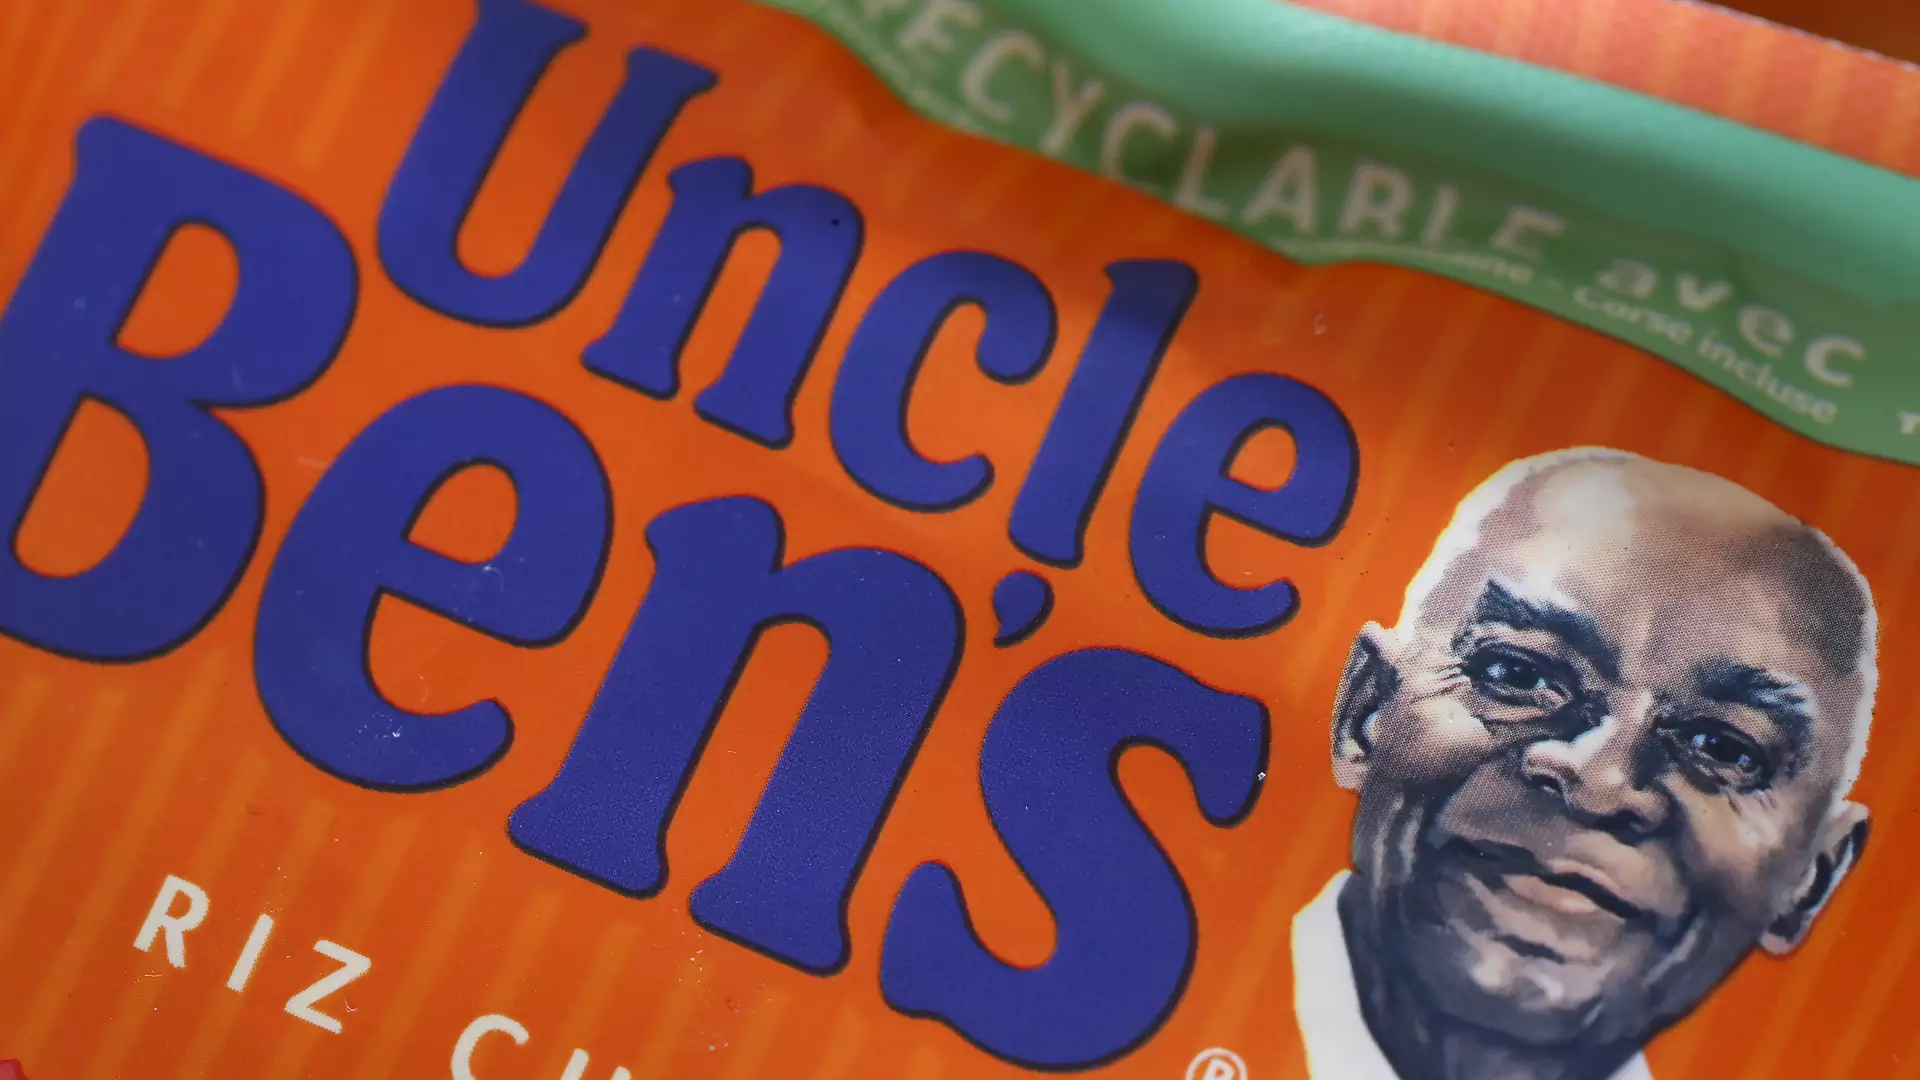 Ryż Uncle Ben's już bez rasistowskiej nazwy. Firma zaprezentowała nowe logo